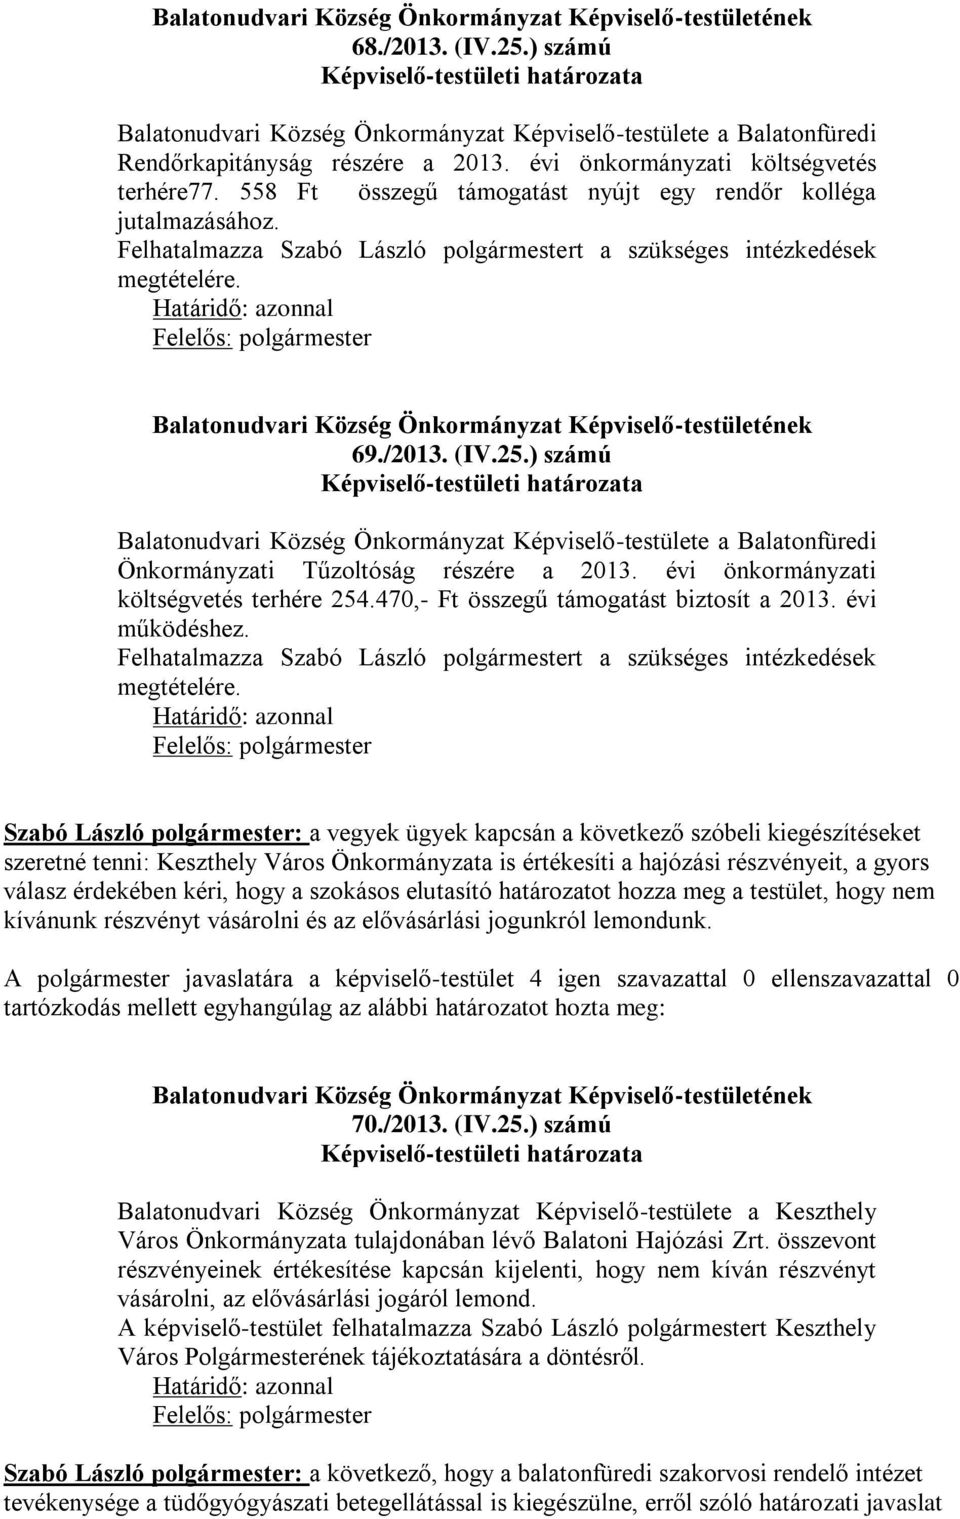 ) számú Balatonudvari Község Önkormányzat Képviselő-testülete a Balatonfüredi Önkormányzati Tűzoltóság részére a 2013. évi önkormányzati költségvetés terhére 254.